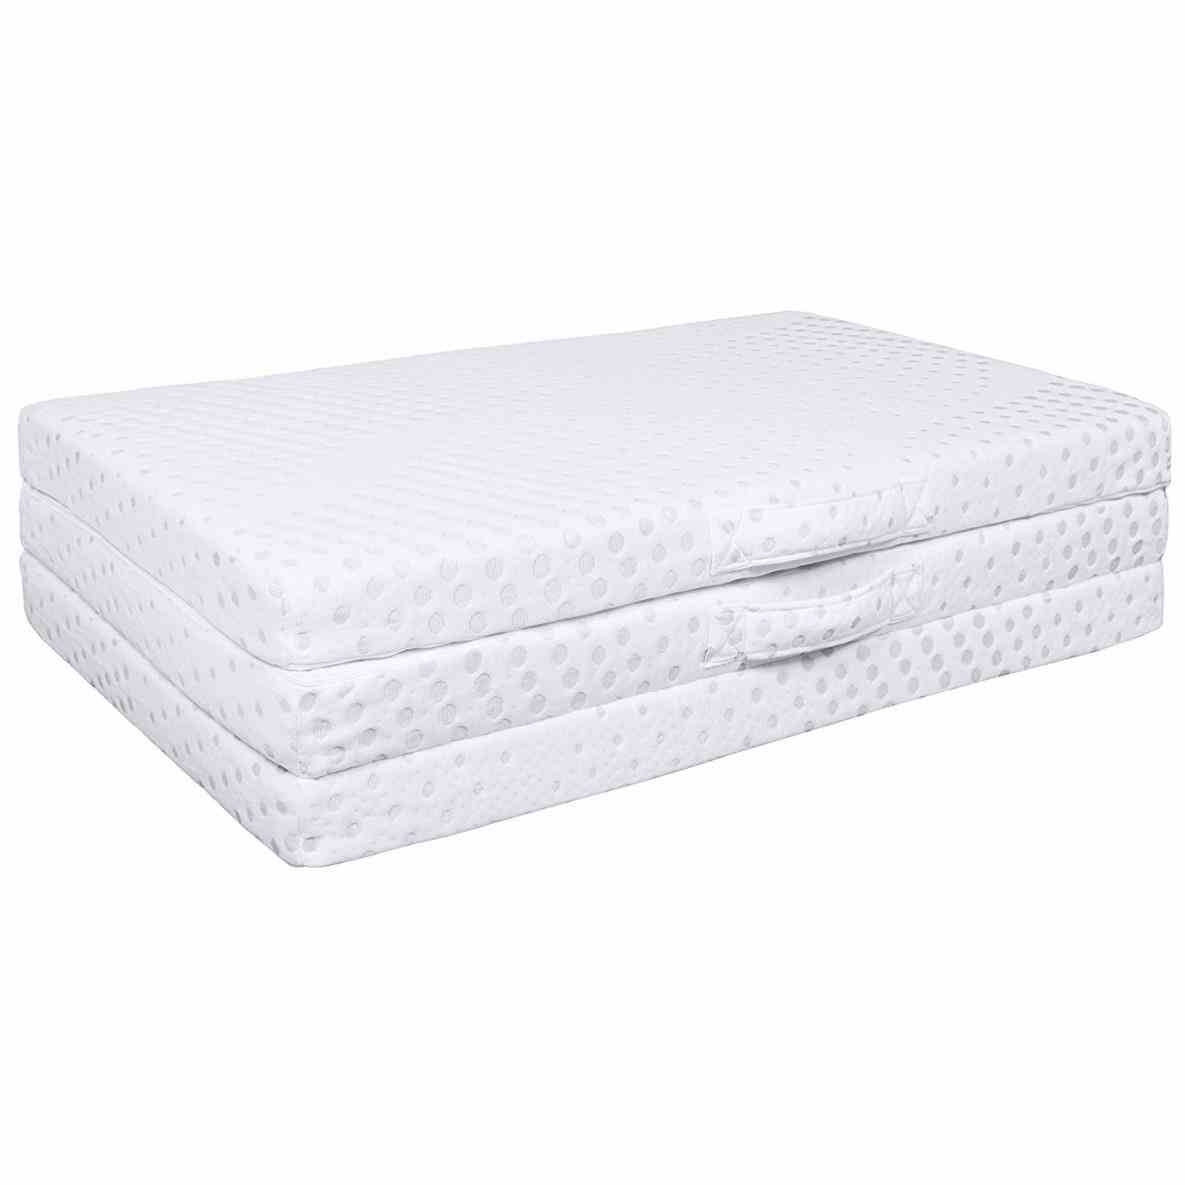 Trifold Foam Bed Costco